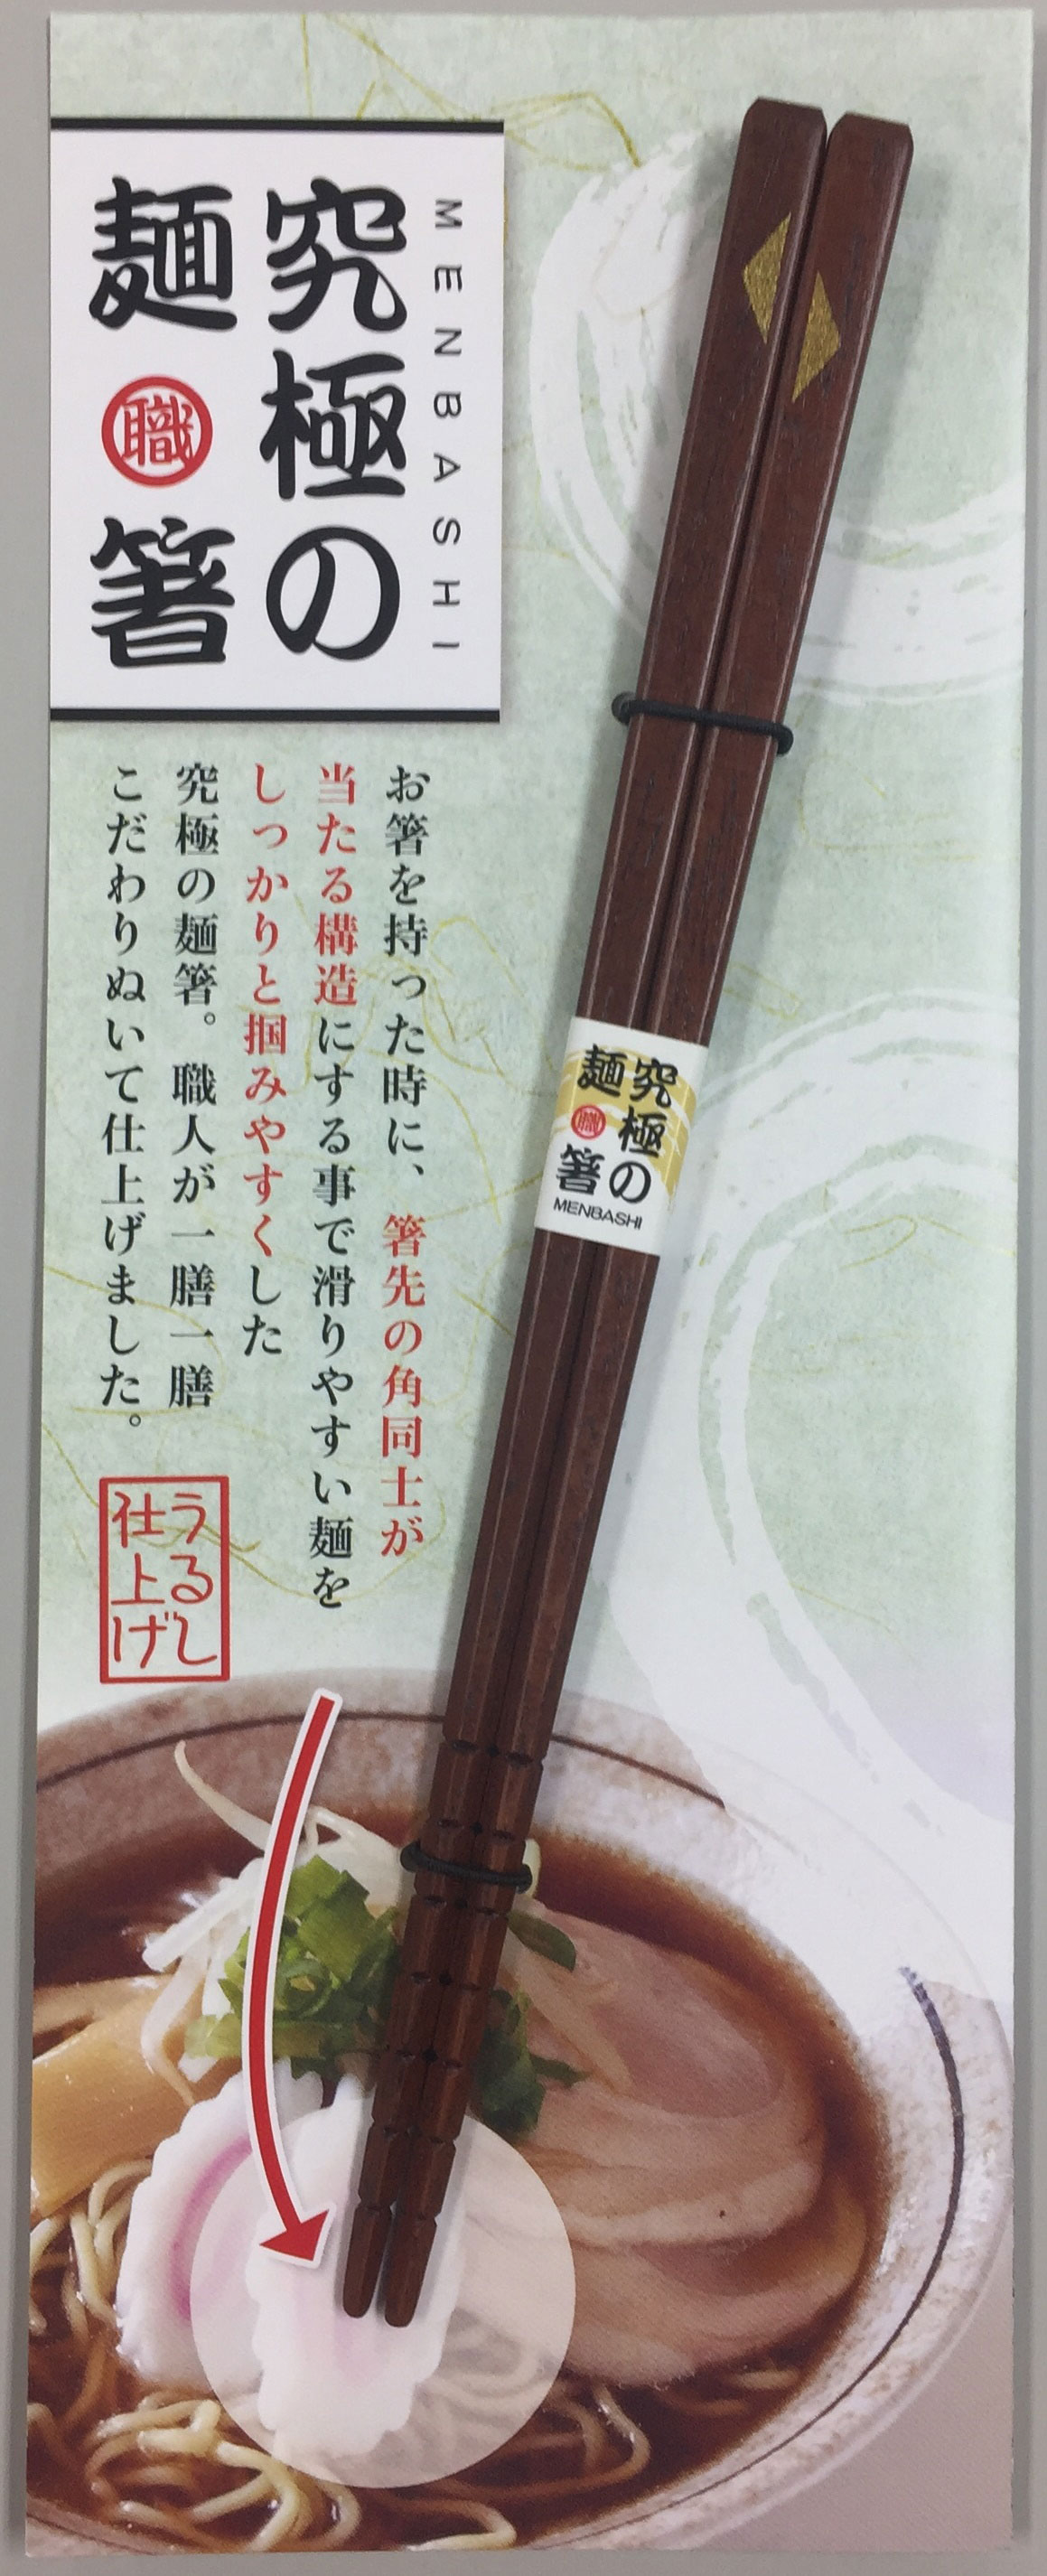 究極の麺箸21cm